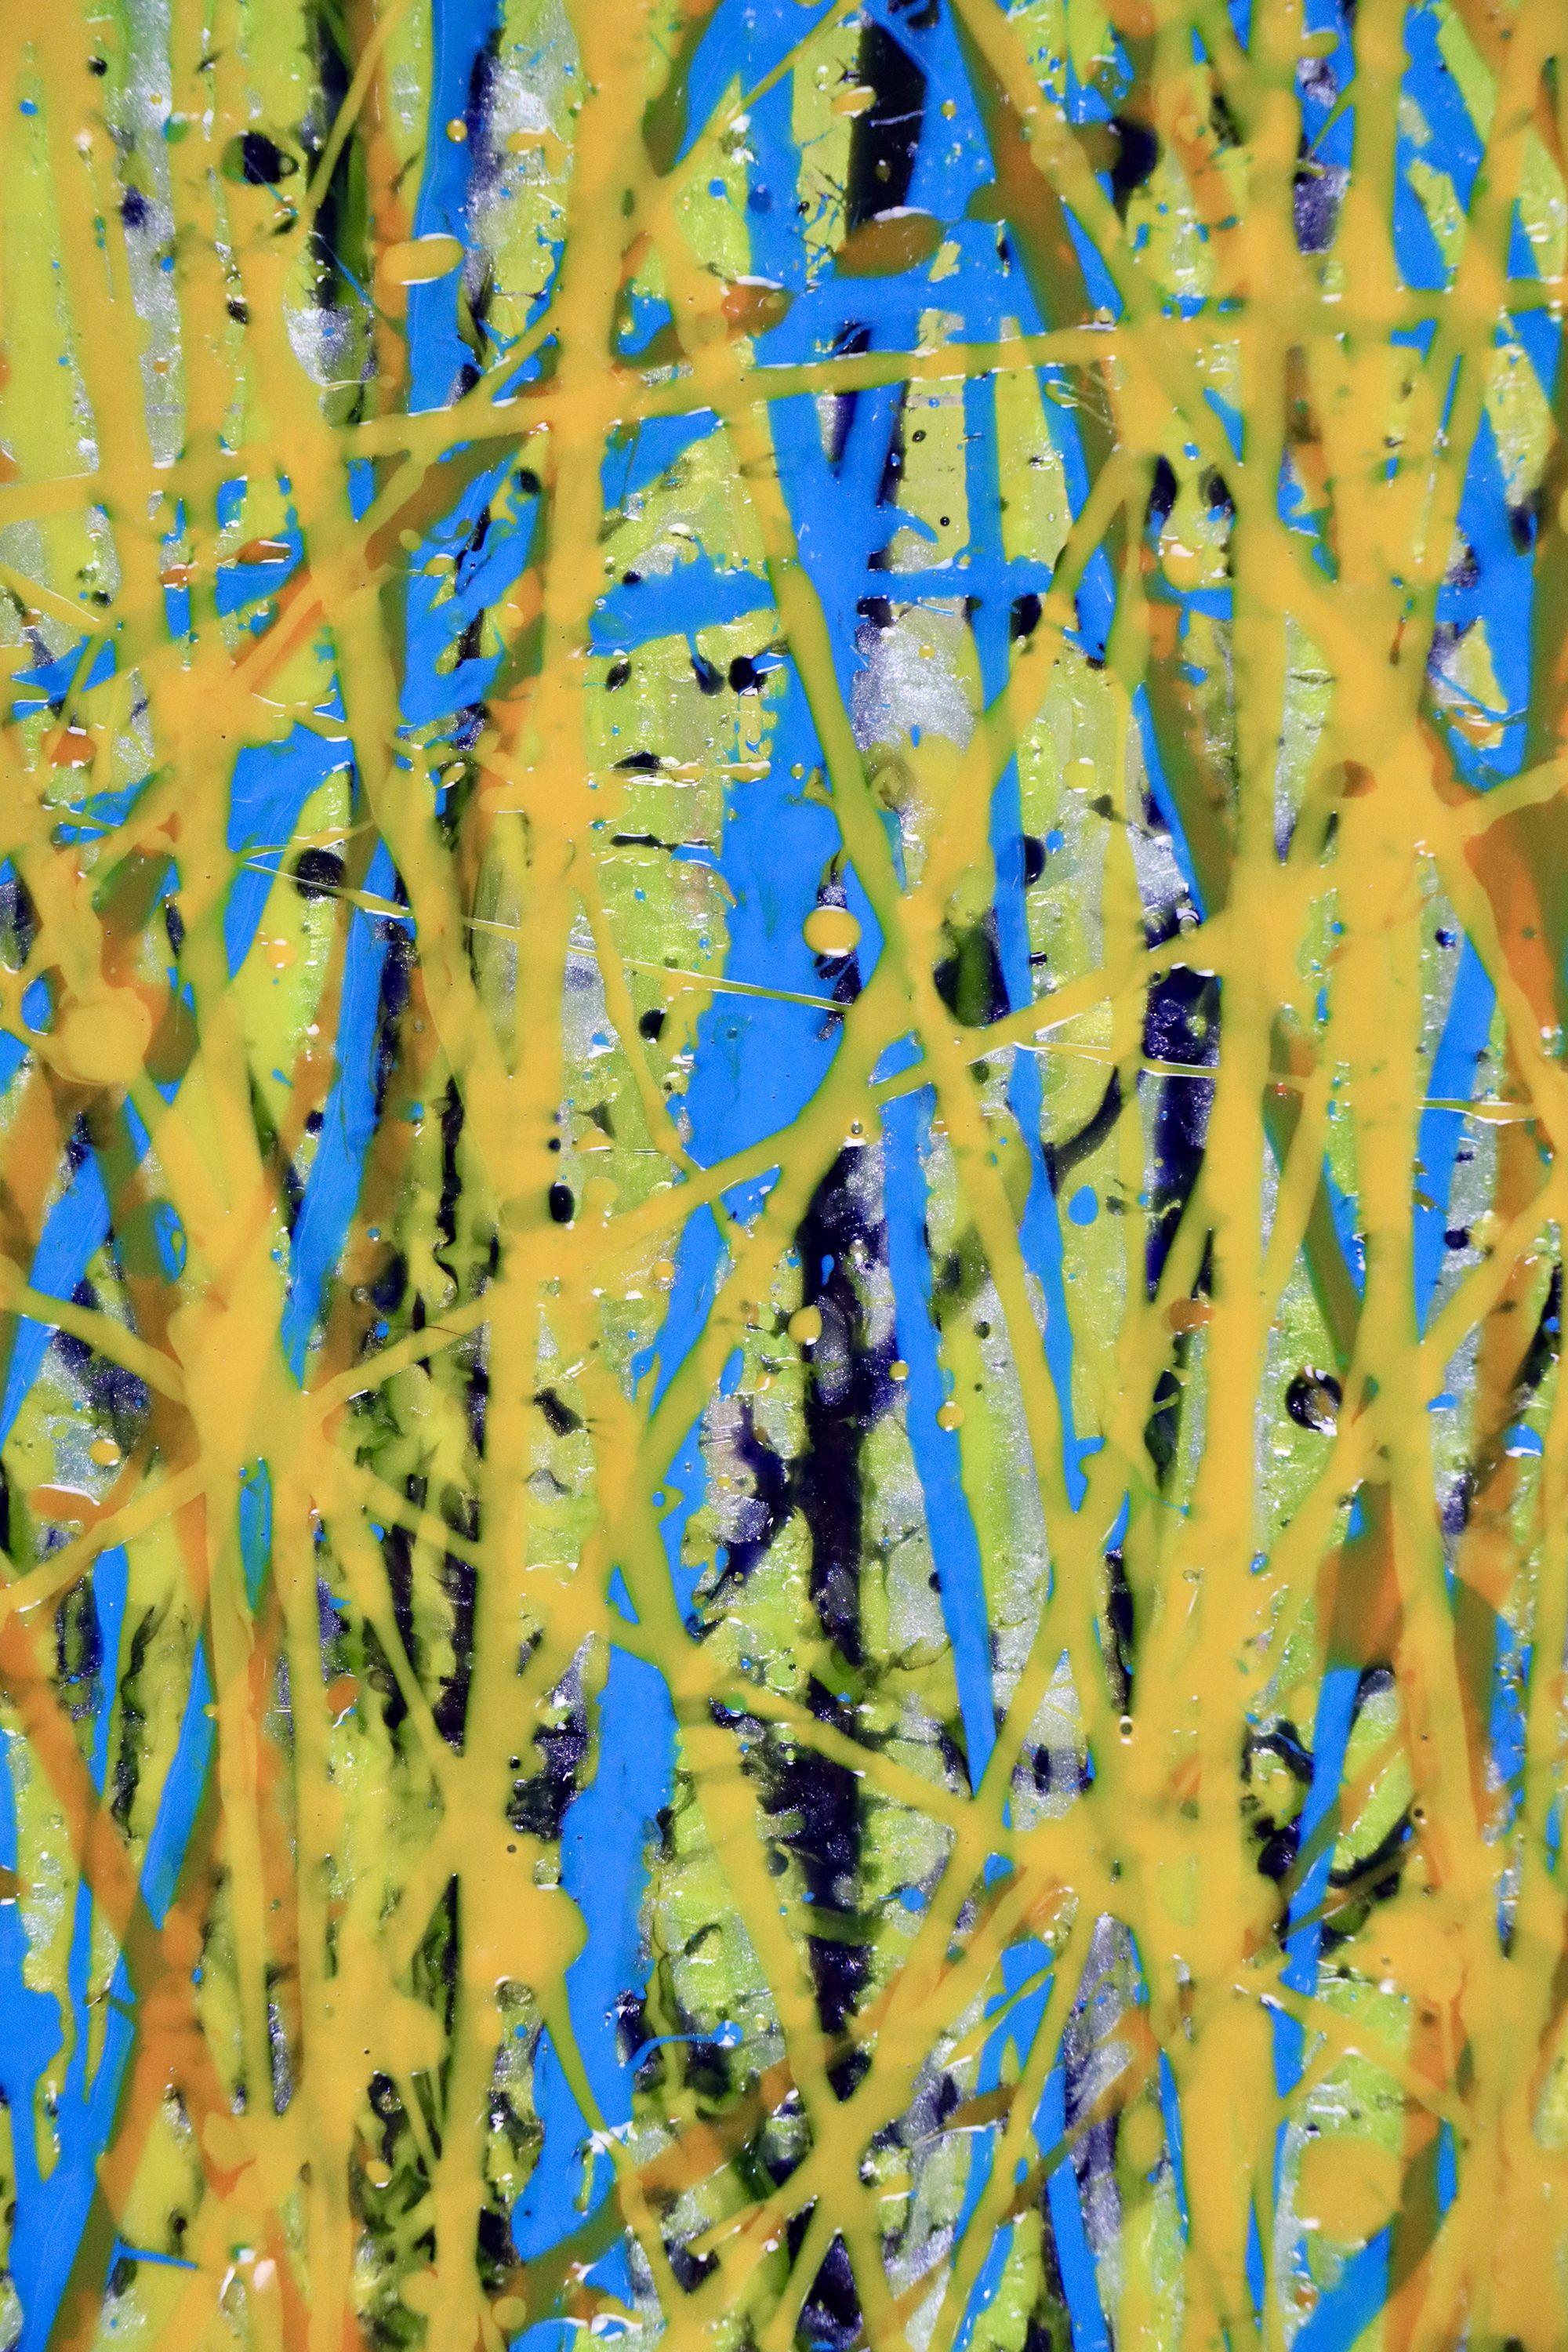 Drei Leinwände16 B x 20 H x 1,5 in jeder.    Ausdrucksstarkes, modernes, abstraktes Bild voller Leben, Bewegung, Glanz und Schimmer! Inspiriert von der Natur, in Gelb-, Hellblau-, Indigo- und Minttönen, kombiniert mit Glimmerpartikeln. Fertig zum